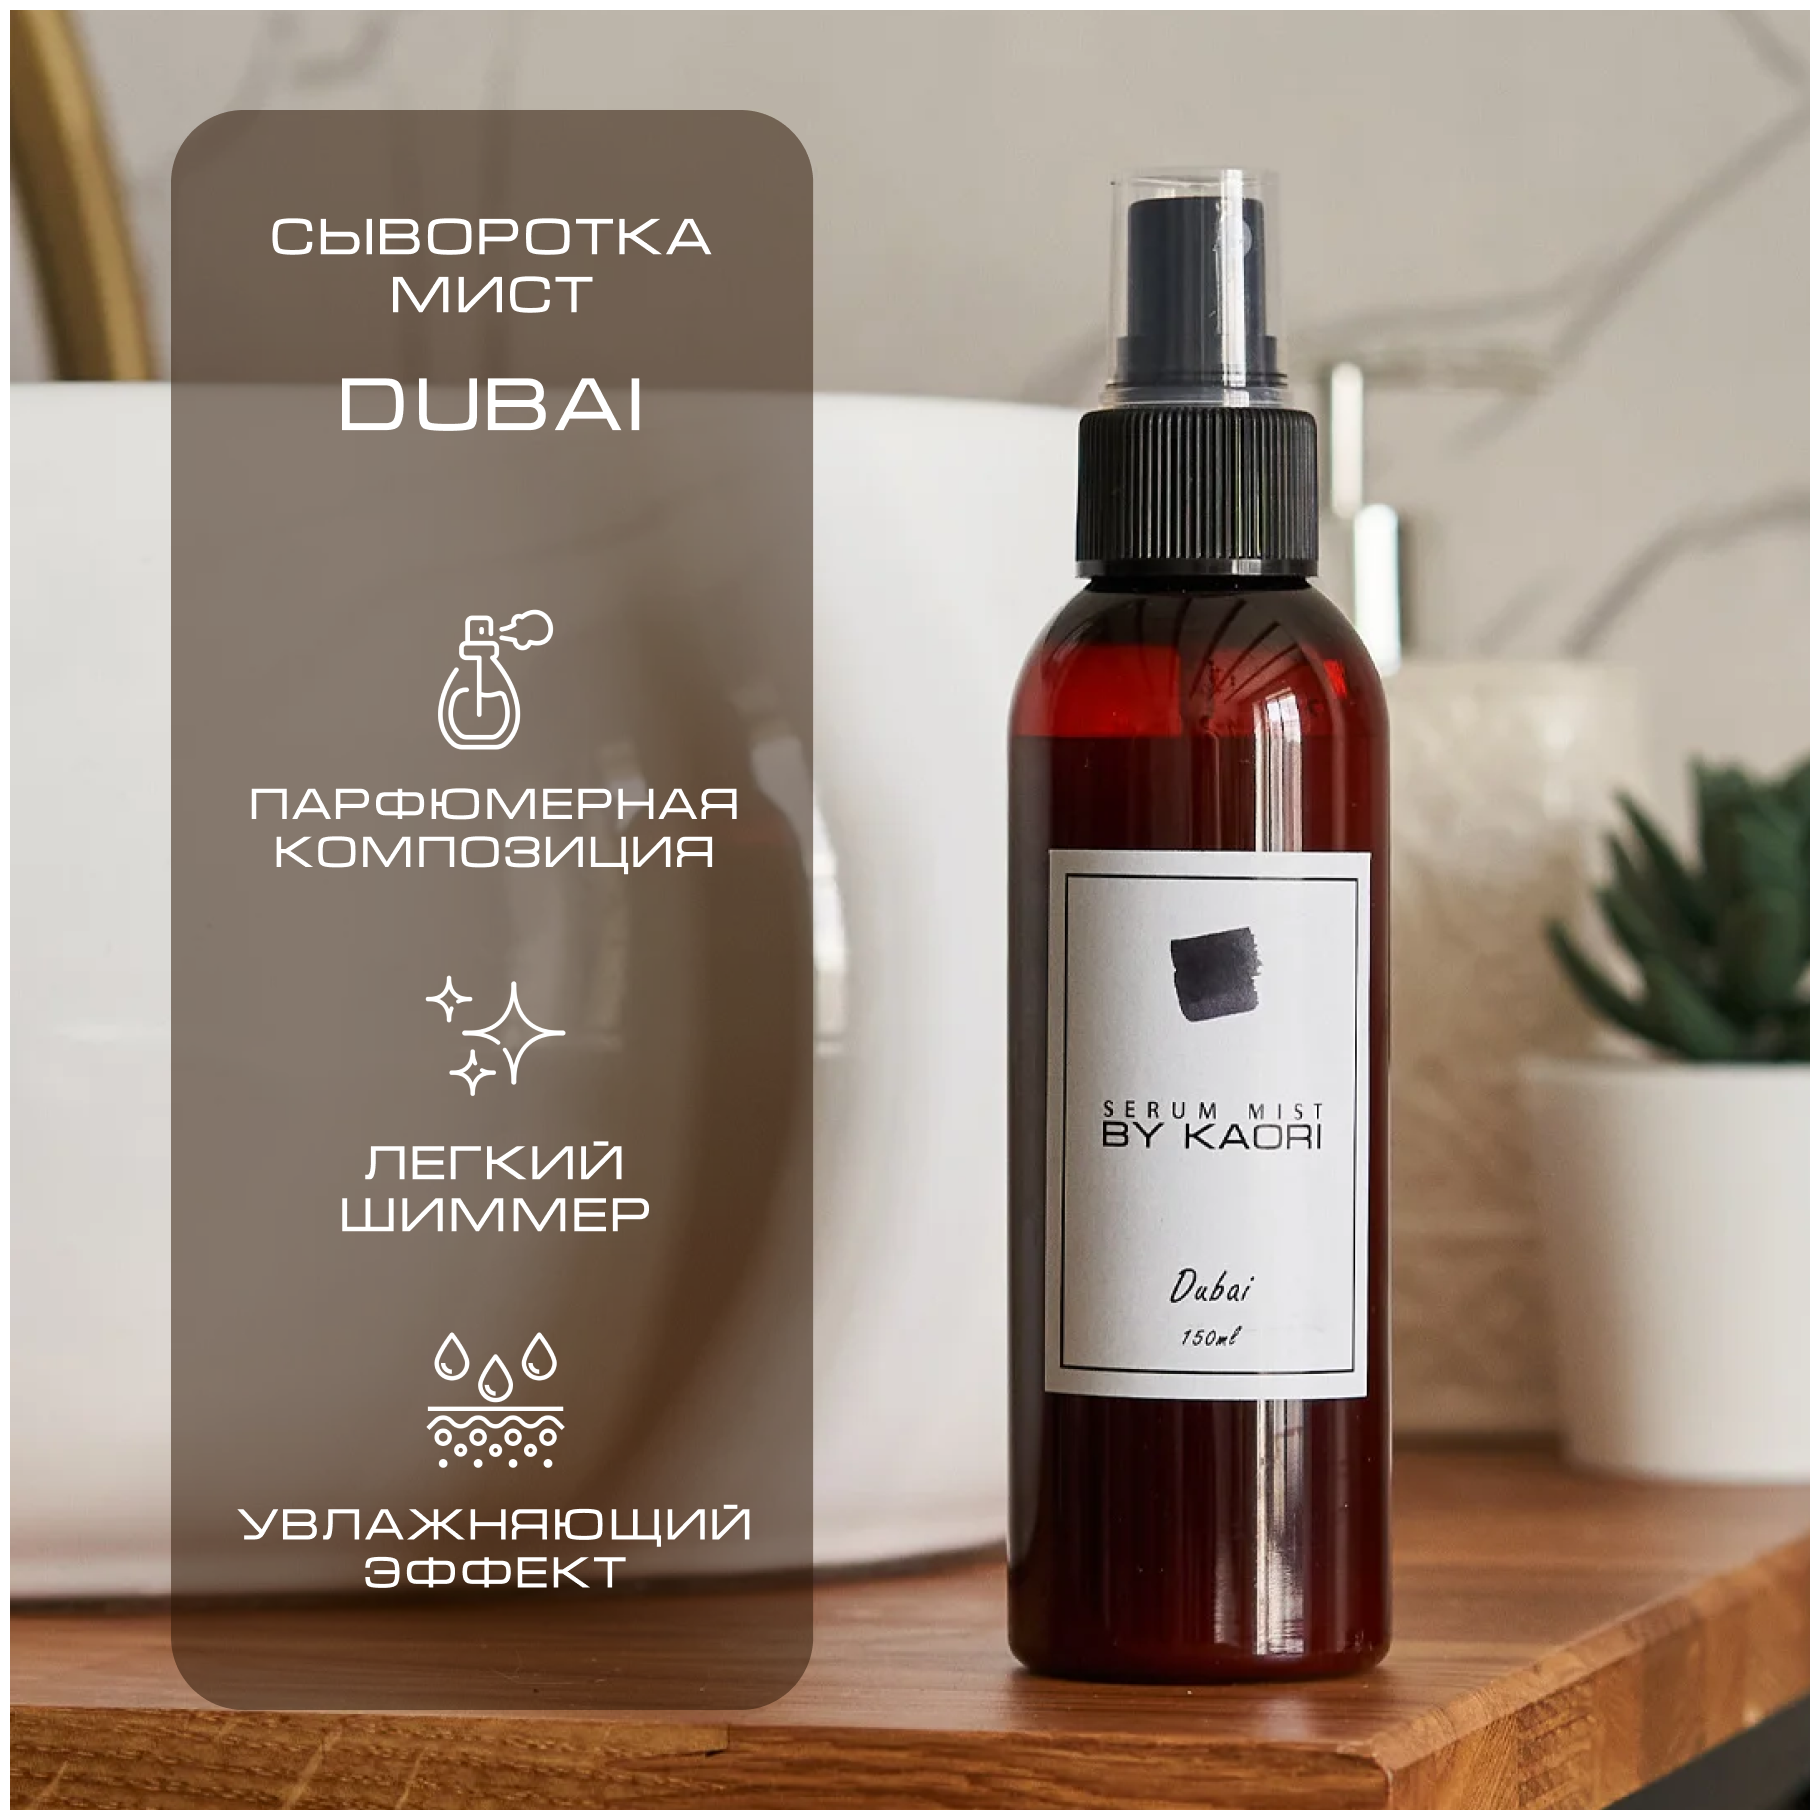 Сыворотка мист для тела BY KAORI спрей для тела парфюмированный аромат DUBAI (Дубаи)